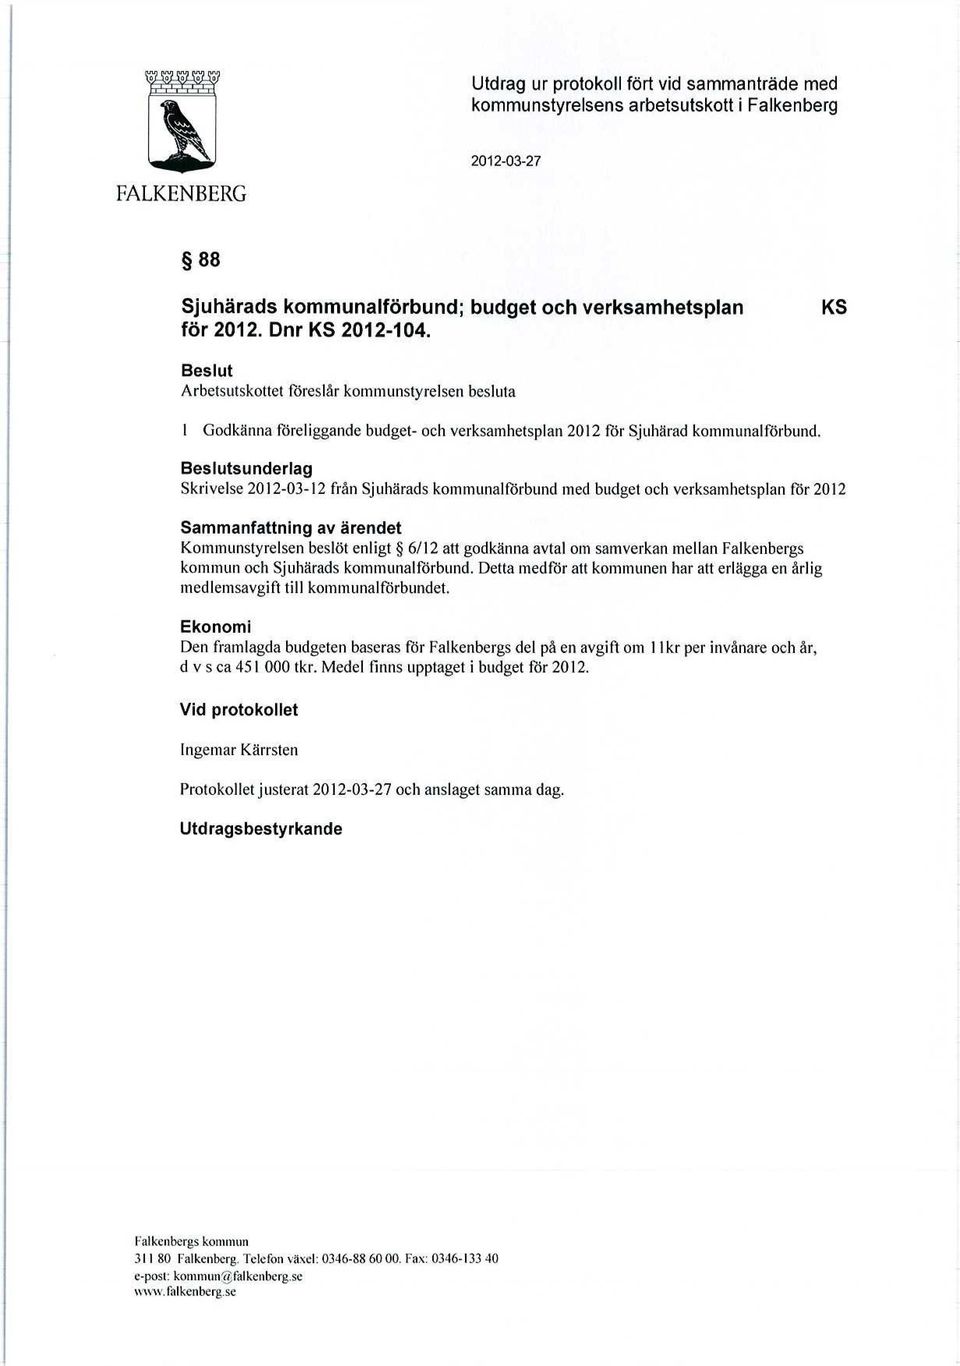 Beslutsunderlag Skrivelse 2012-03-12 från Sjuhärads kommunalförbund med budget och verksamhetsplan För 2012 Sammanfattning av ärendet Kommunstyrelsen beslöt enligt 6/12 att godkänna avtal om